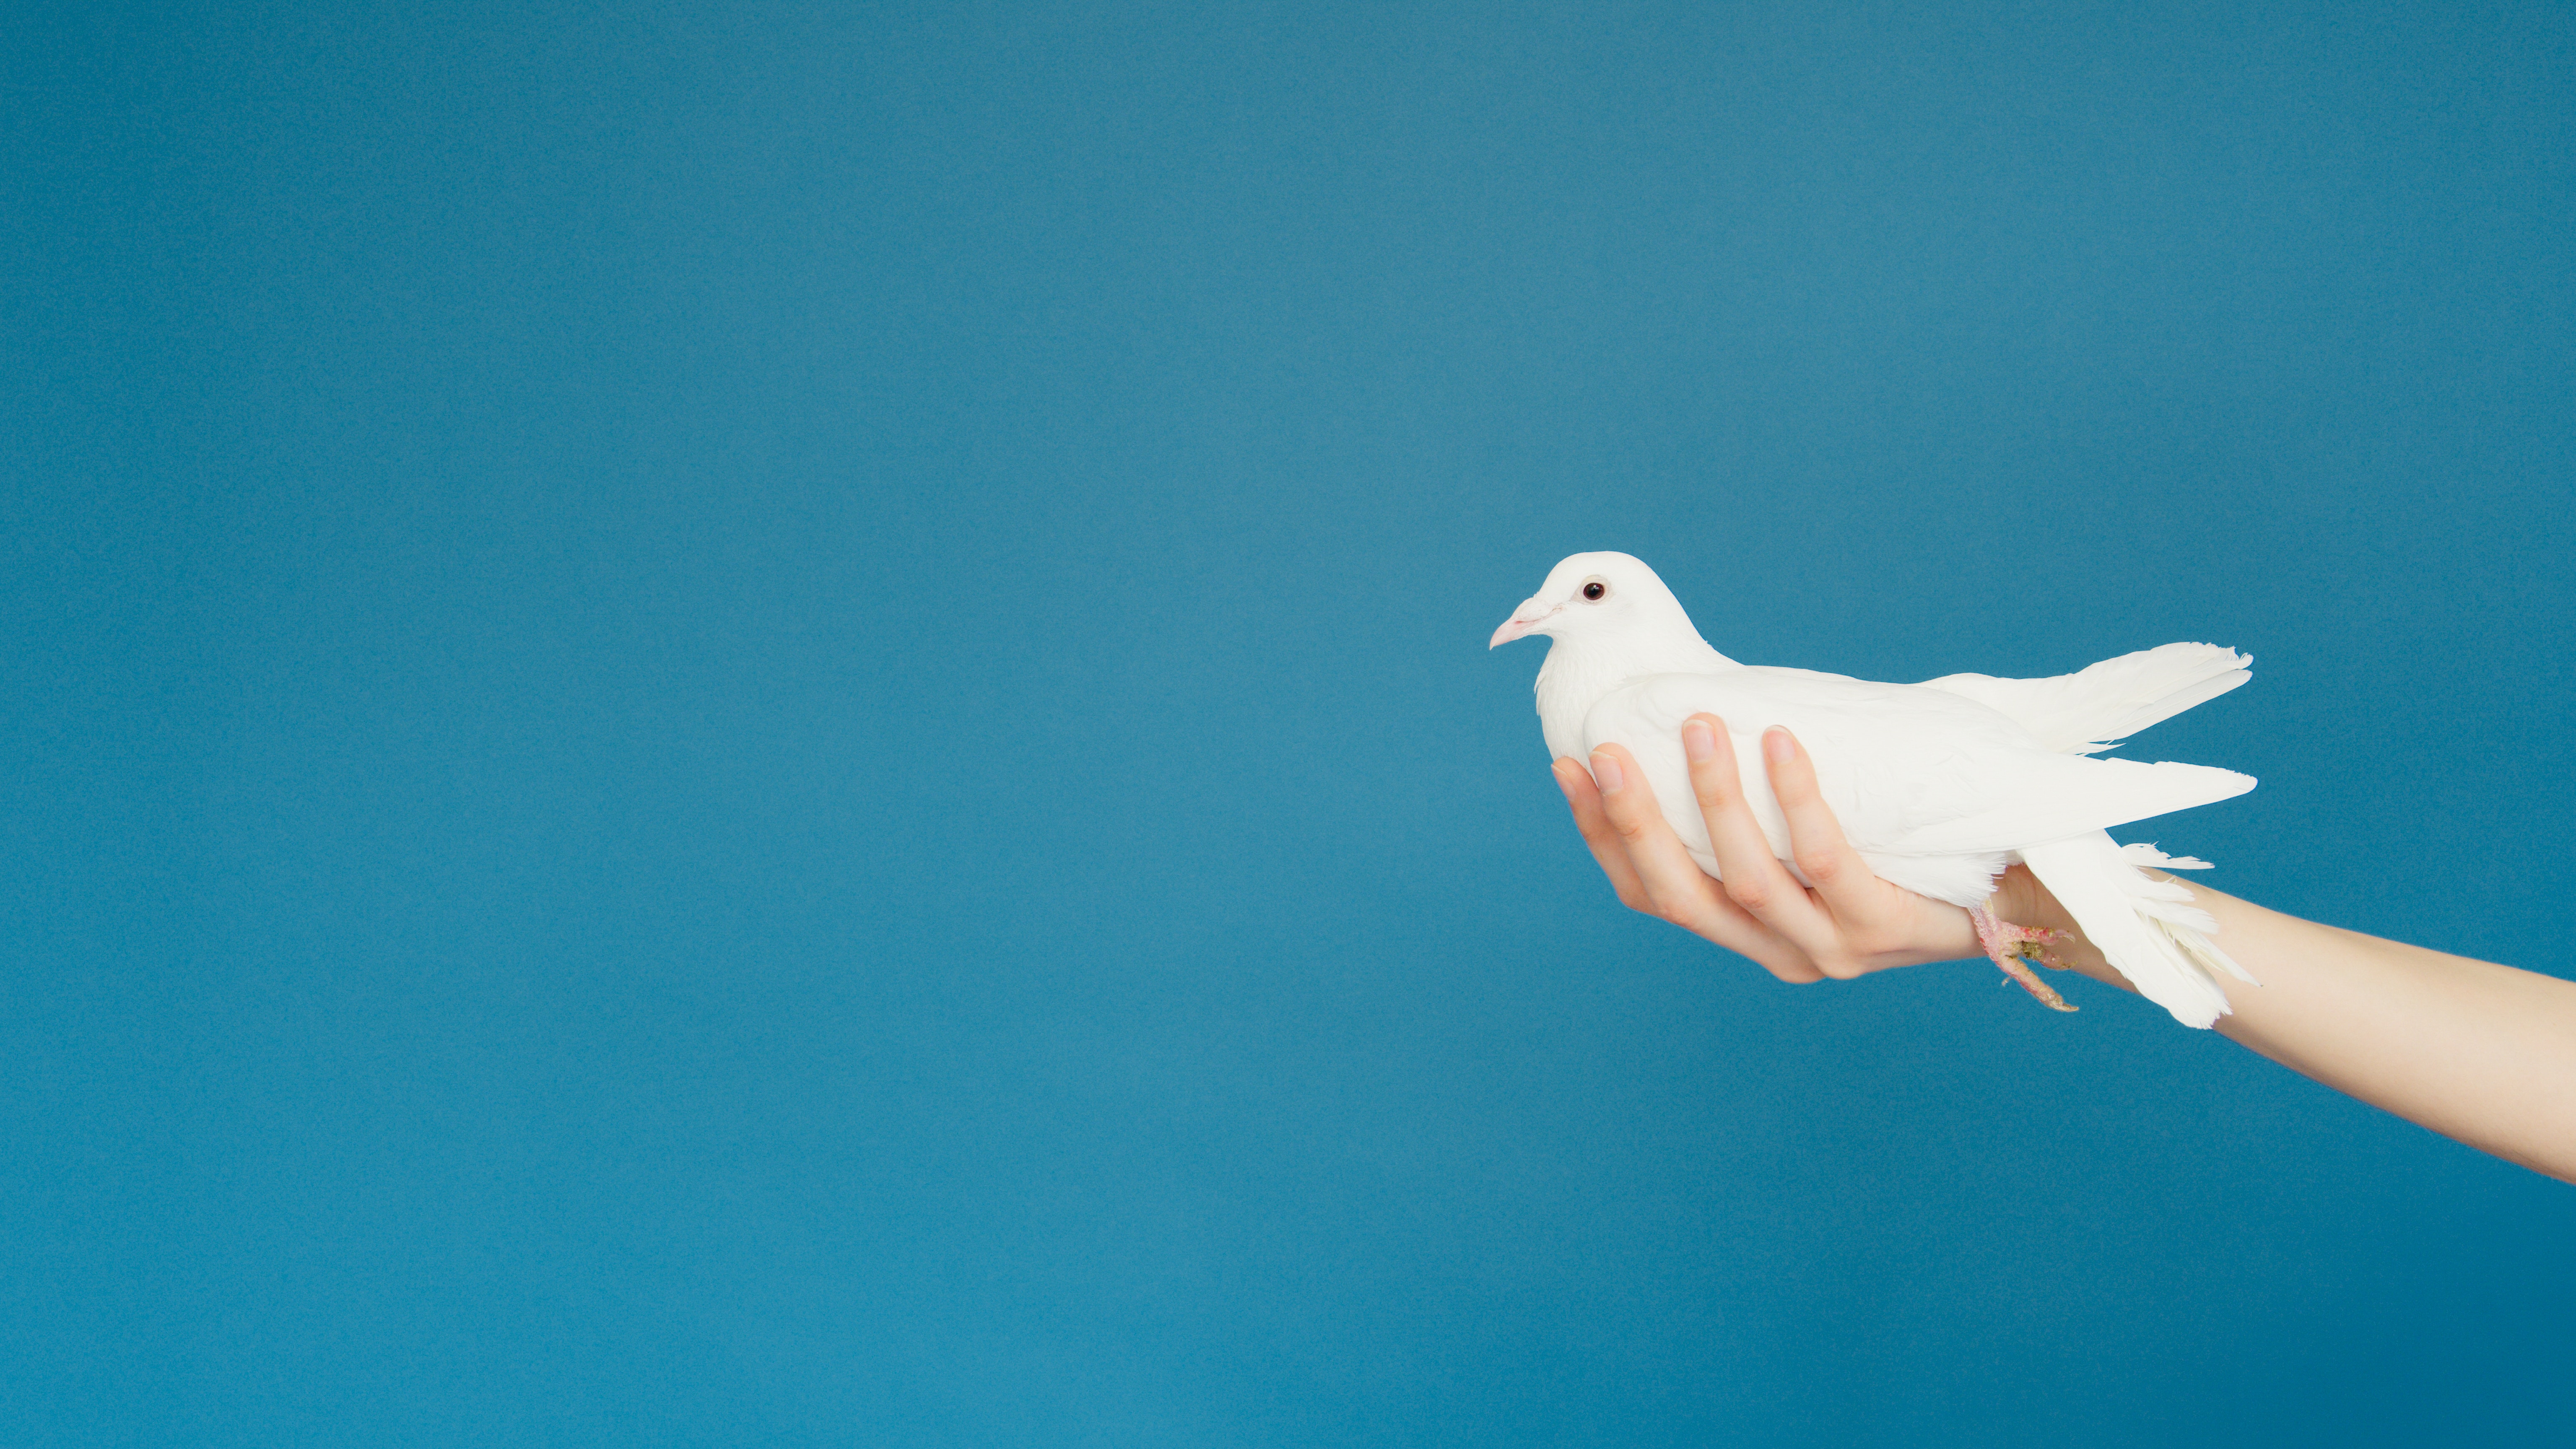 Une main coupe une colombe blanche et s'étend vers l'avant comme si elle offrait la colombe.